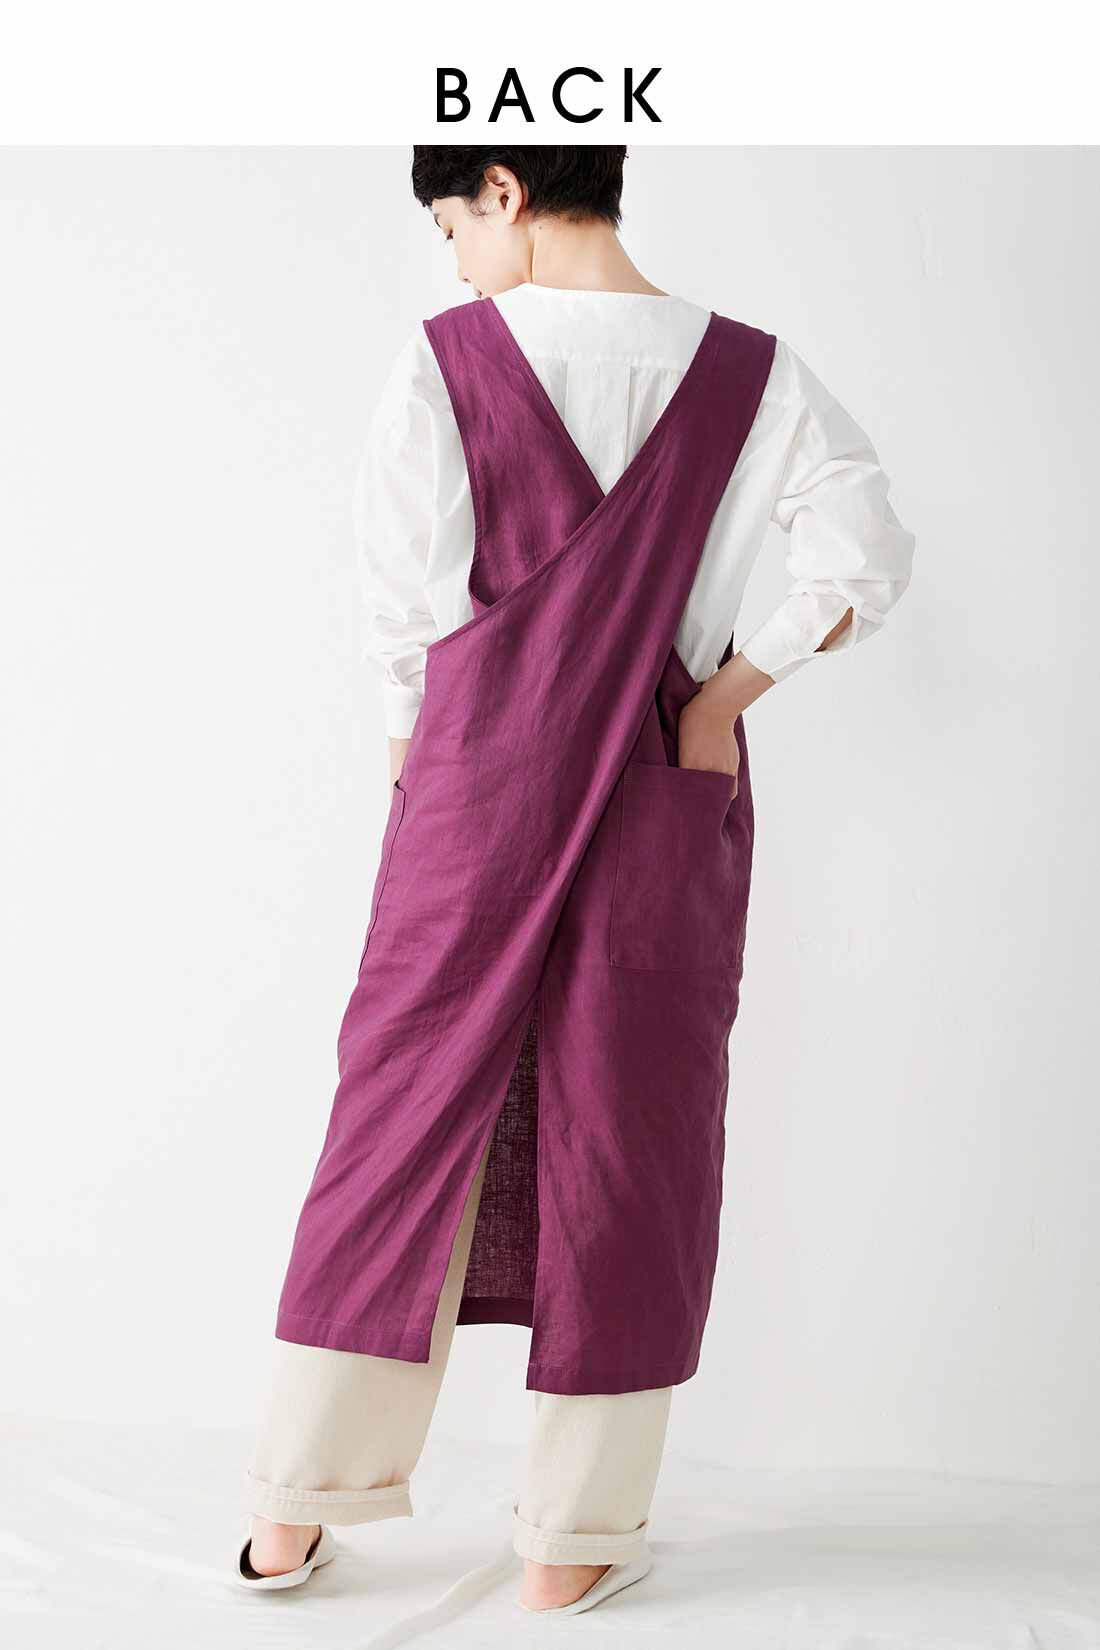 イディット|IEDIT[イディット]　麻混素材のジャンパースカート風エプロン〈ローズパープル〉|※着用イメージです。お届けするカラーとは異なります。